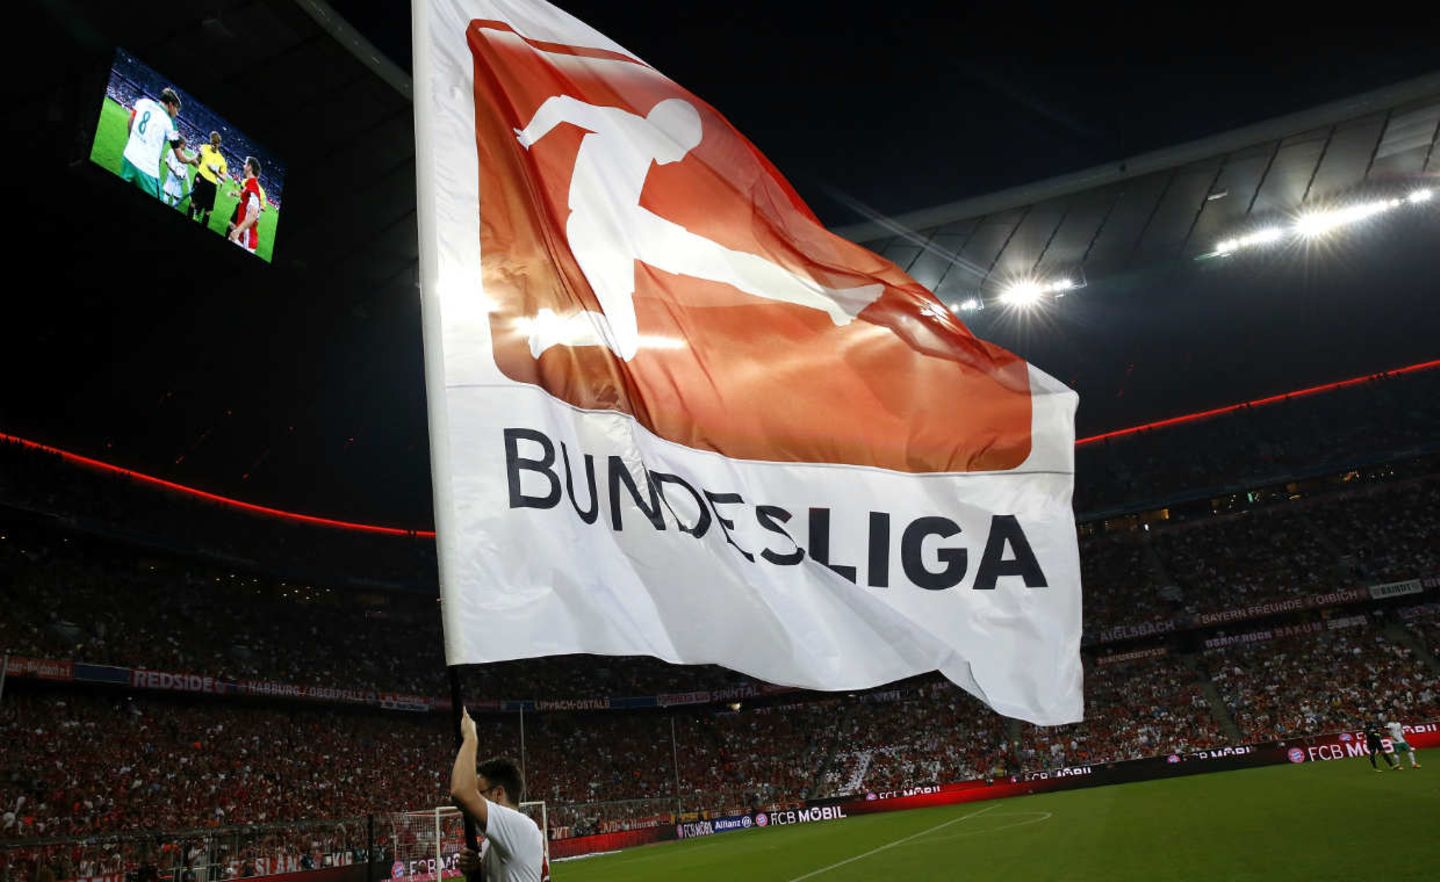 Die Fußball-Bundesliga will im Ausland weiter wachsen - unter anderem in den USA